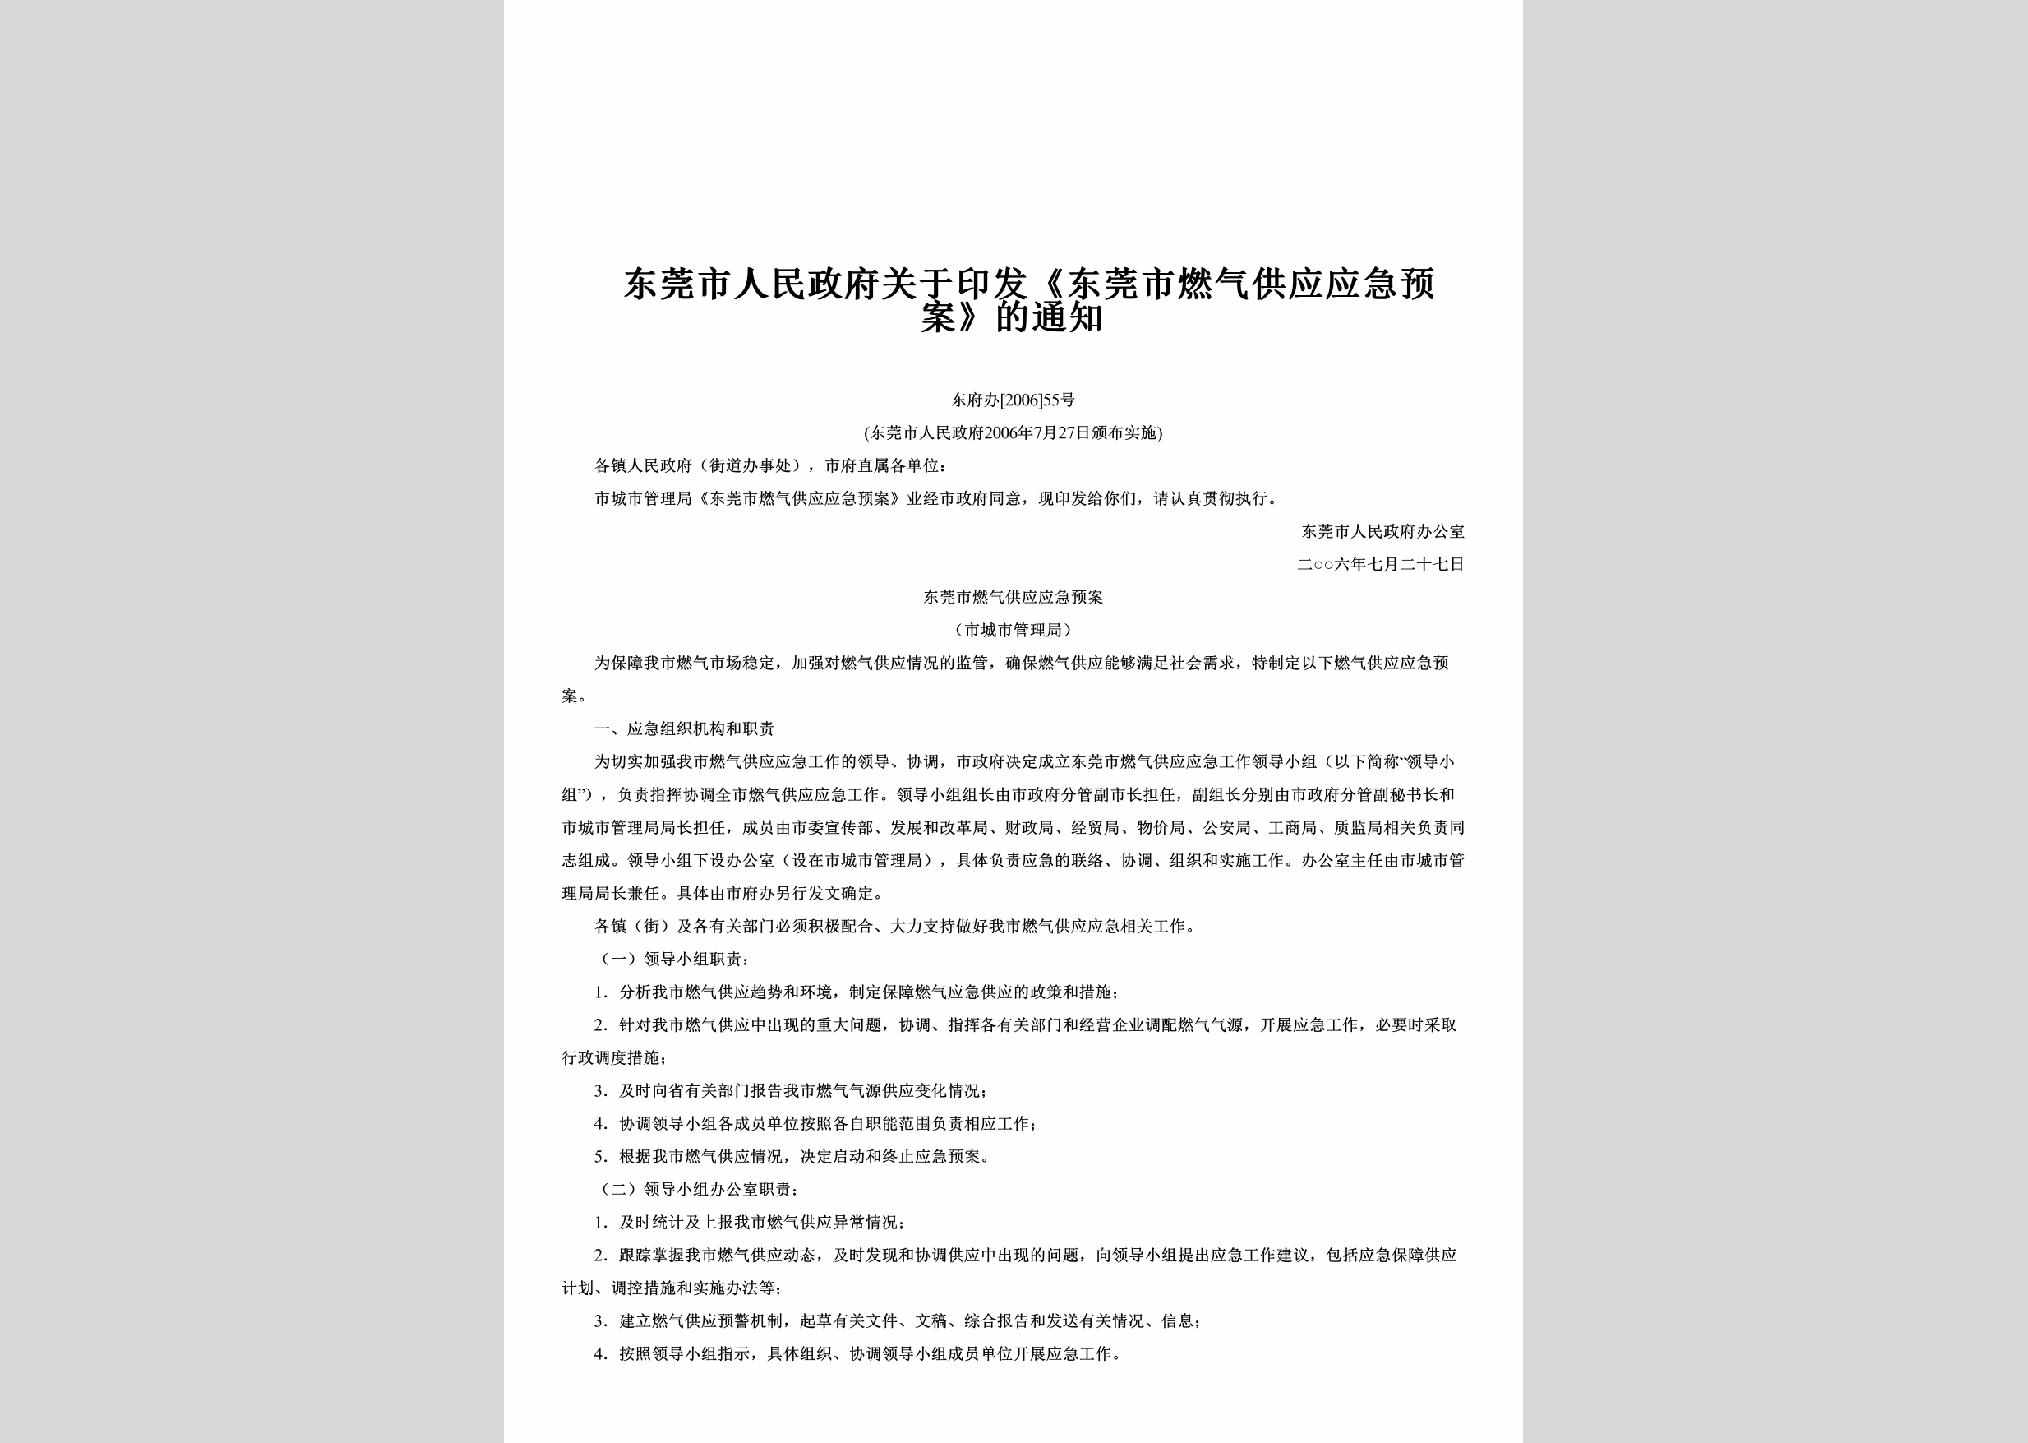 东府办[2006]55号：关于印发《东莞市燃气供应应急预案》的通知